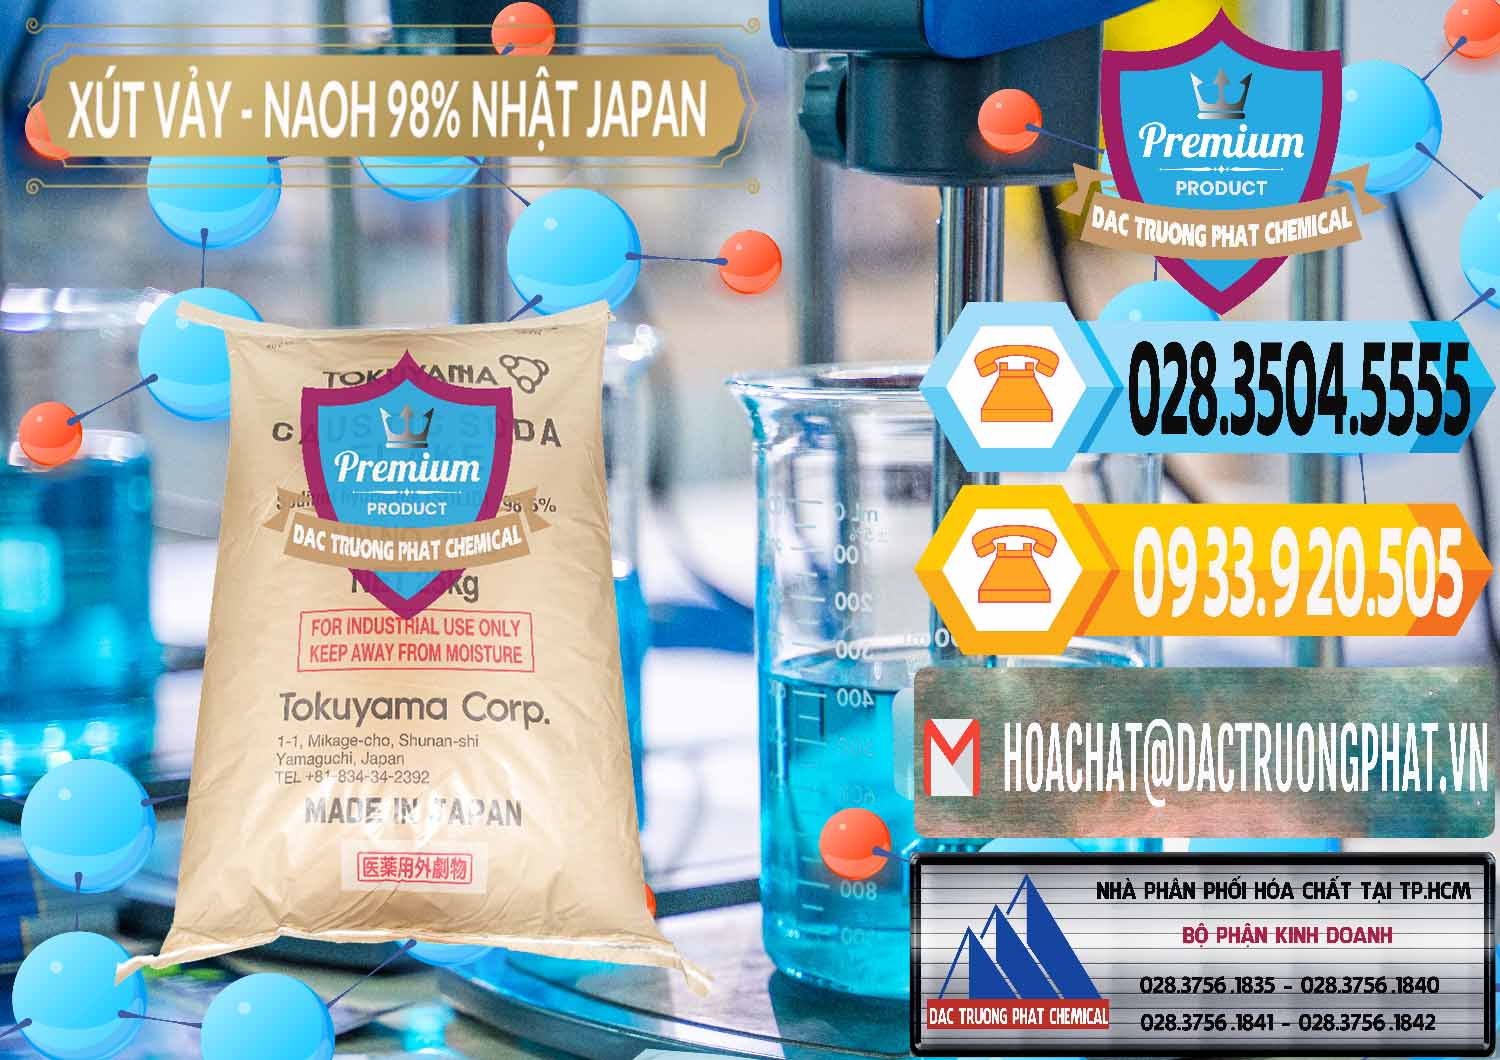 Chuyên bán - phân phối Xút Vảy - NaOH Vảy 98% Tokuyama Nhật Bản Japan - 0173 - Nơi phân phối ( cung cấp ) hóa chất tại TP.HCM - hoachattayrua.net